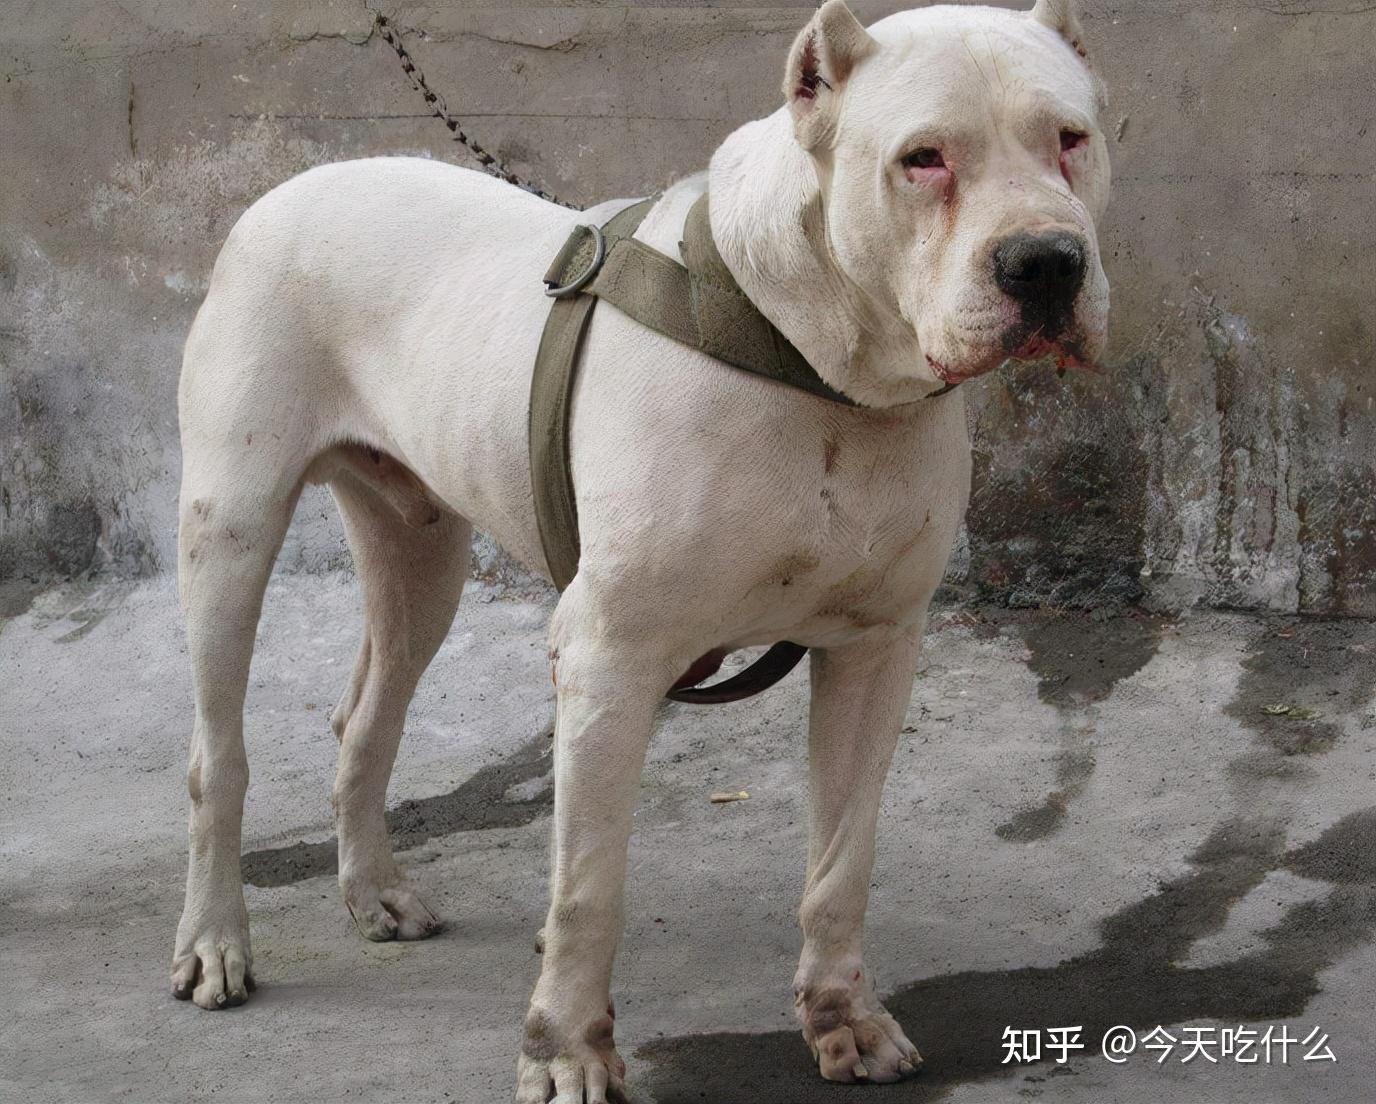 杜高精品幼犬公 - 杜高犬交易 - 猛犬俱乐部-中国具有影响力的猛犬网站 - Powered by Discuz!